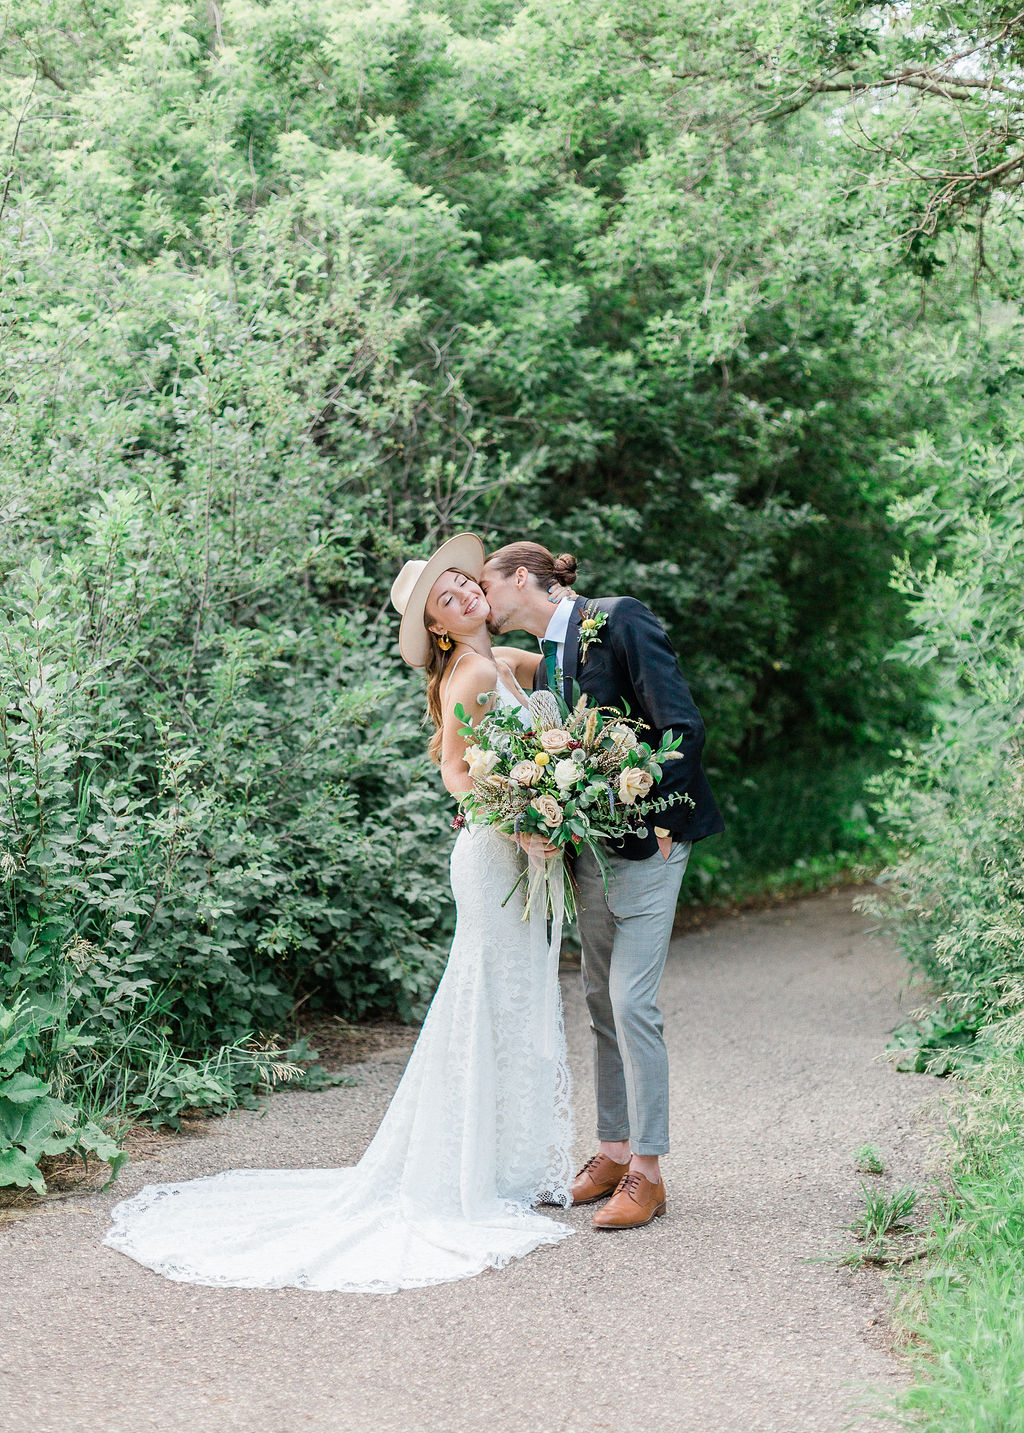 Intimate Wild Flower Wedding - wedding bouquet, bride and groom